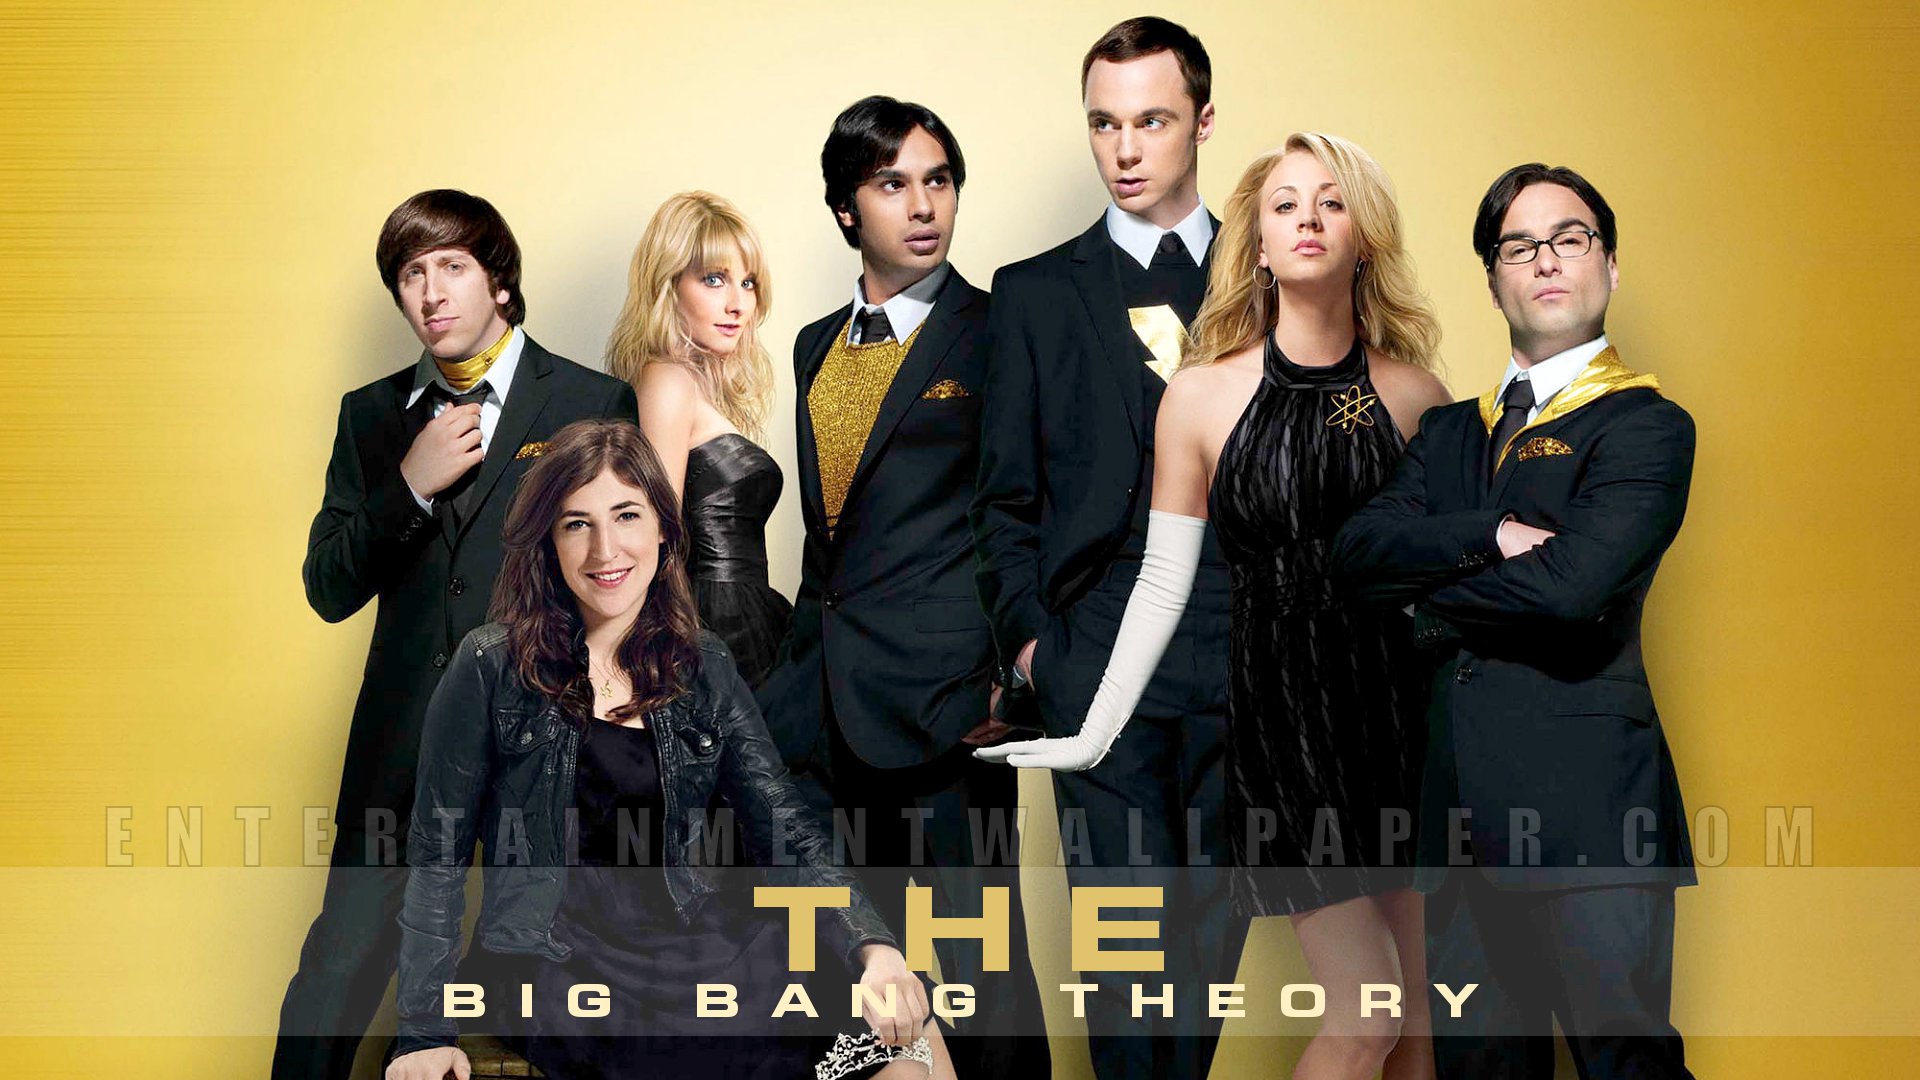 The Big Bang Theory Shannon1982 Wallpaper